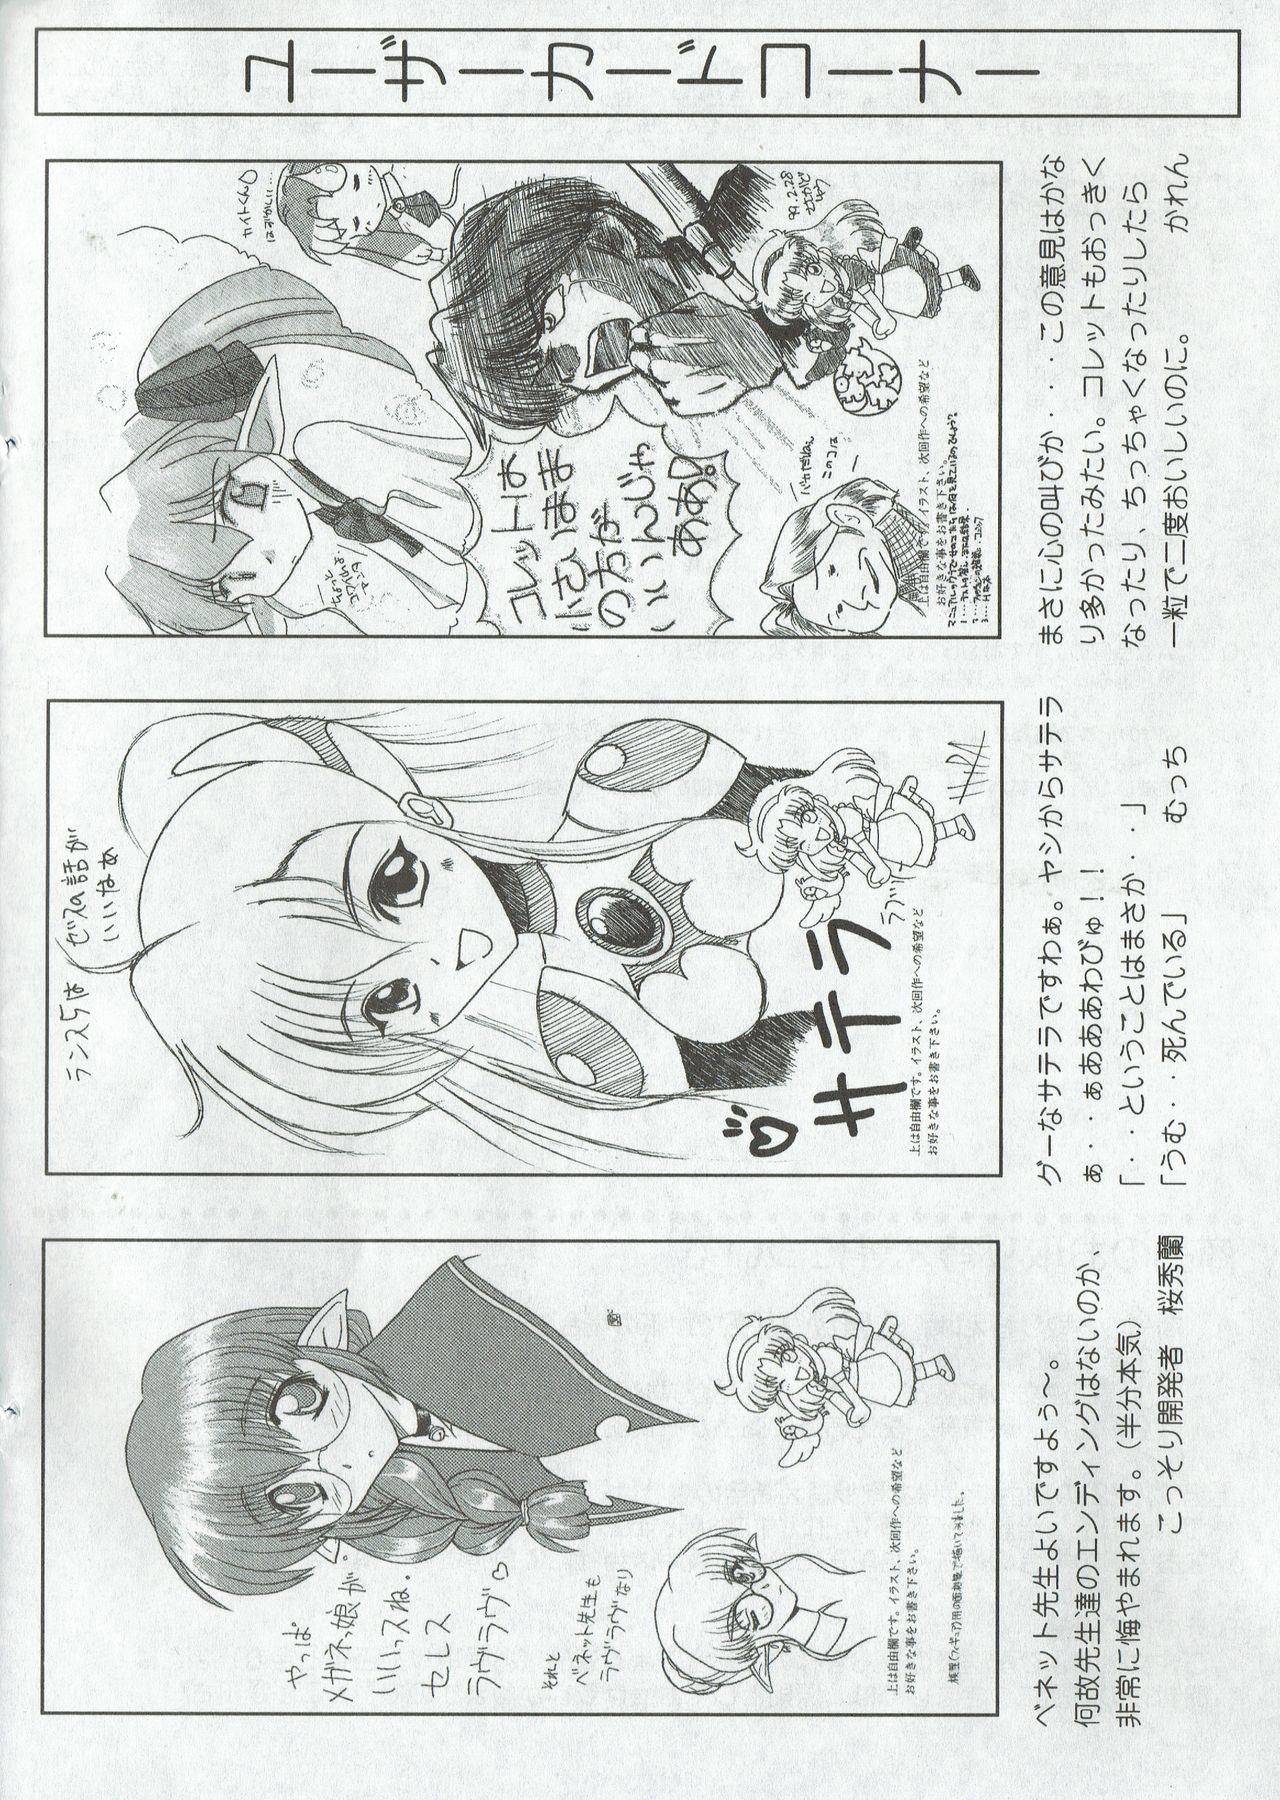 Arisu no Denchi Bakudan Vol. 06 26